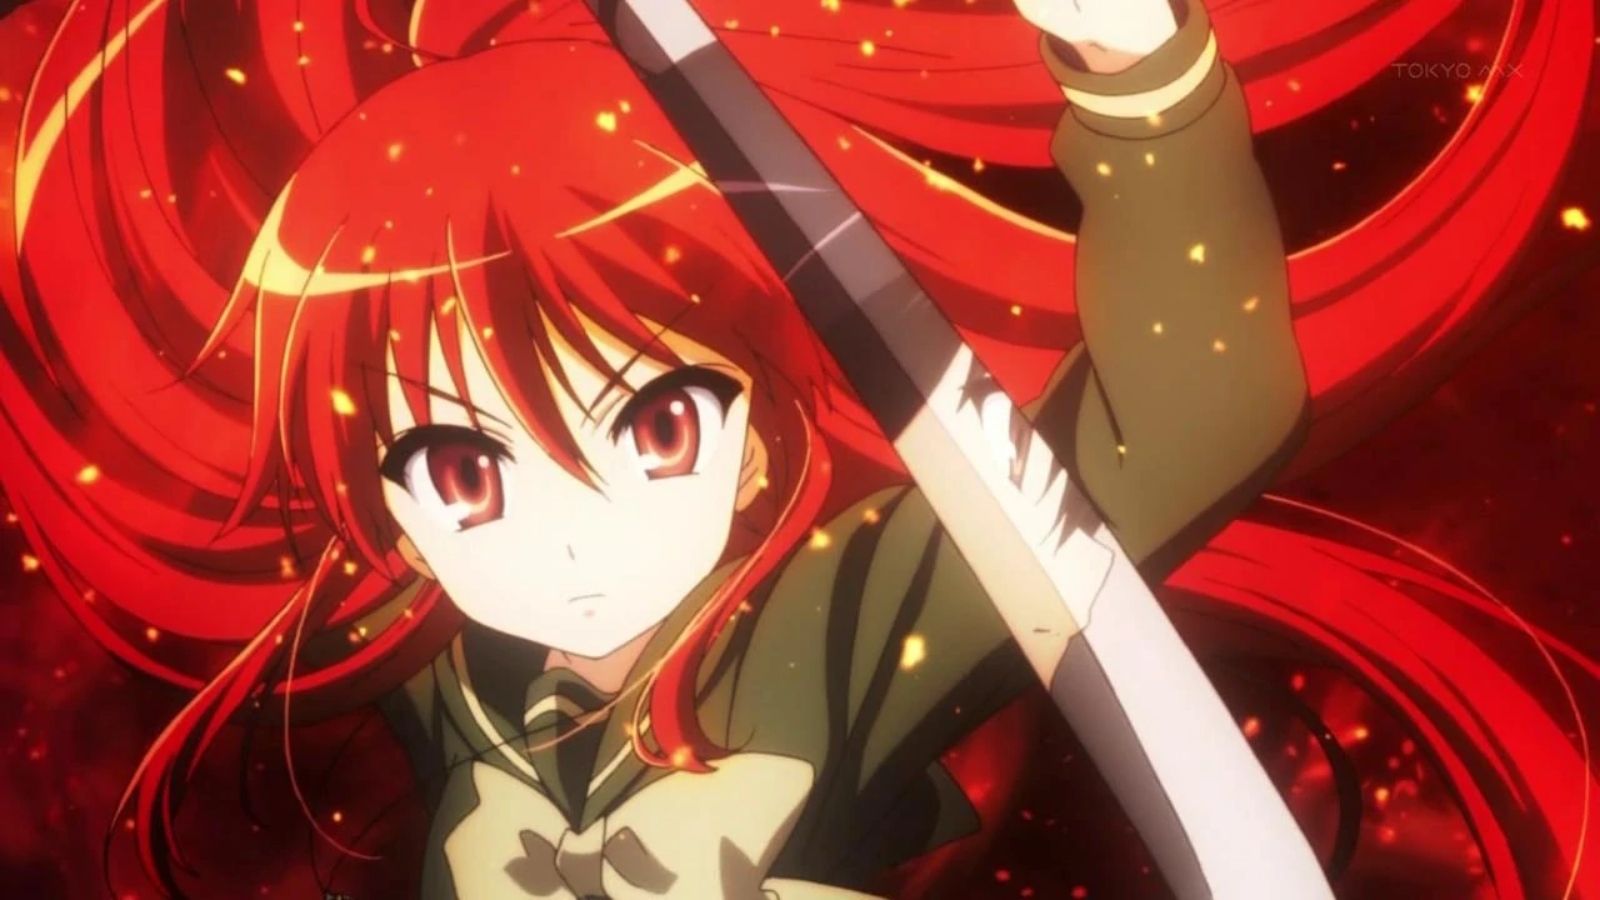 Anime fire power HD wallpapers | Pxfuel